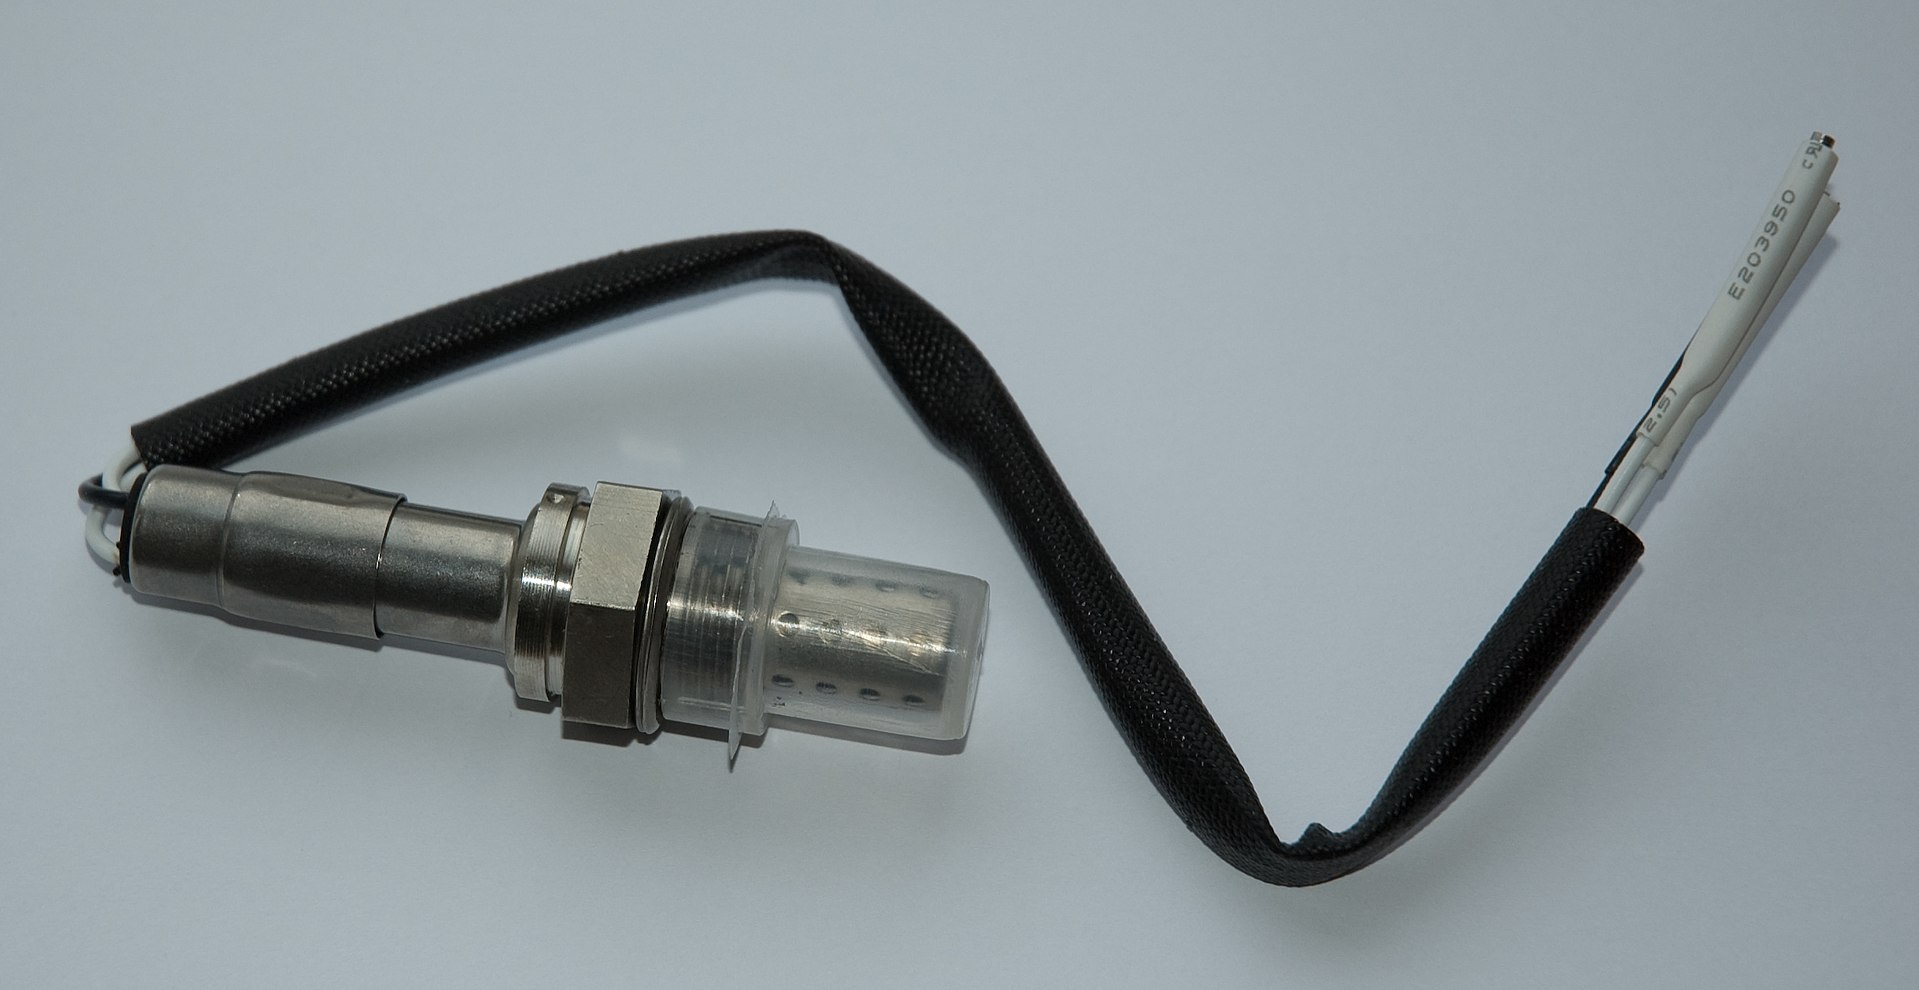 Lambda Sensor also known as an Exhaust Gas Oxygen or EGO Sensor